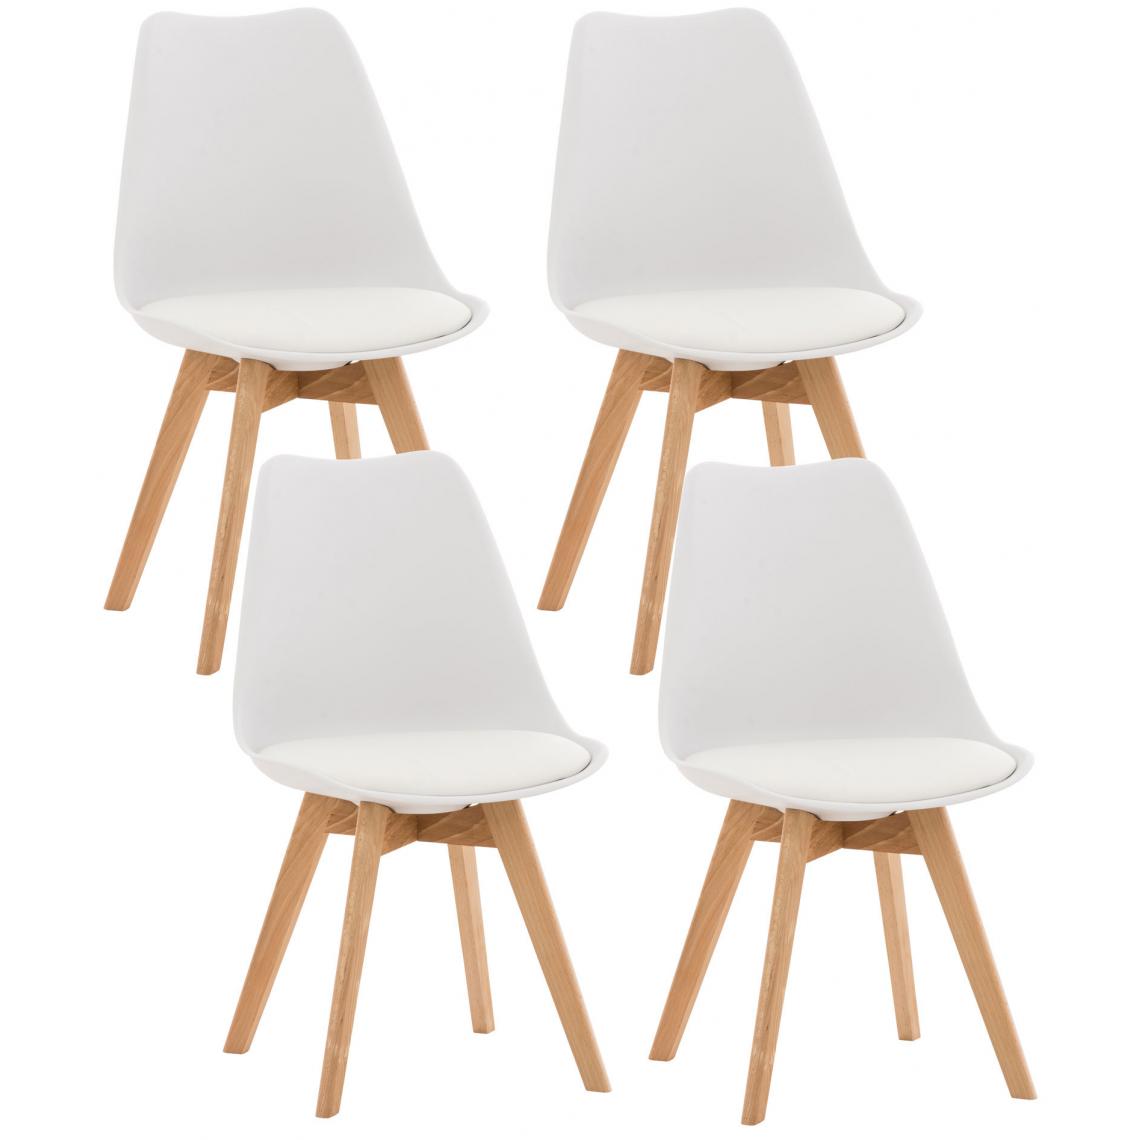 Icaverne - Magnifique Lot de 4 chaises famille Oulan-Bator couleur blanc - Tabourets